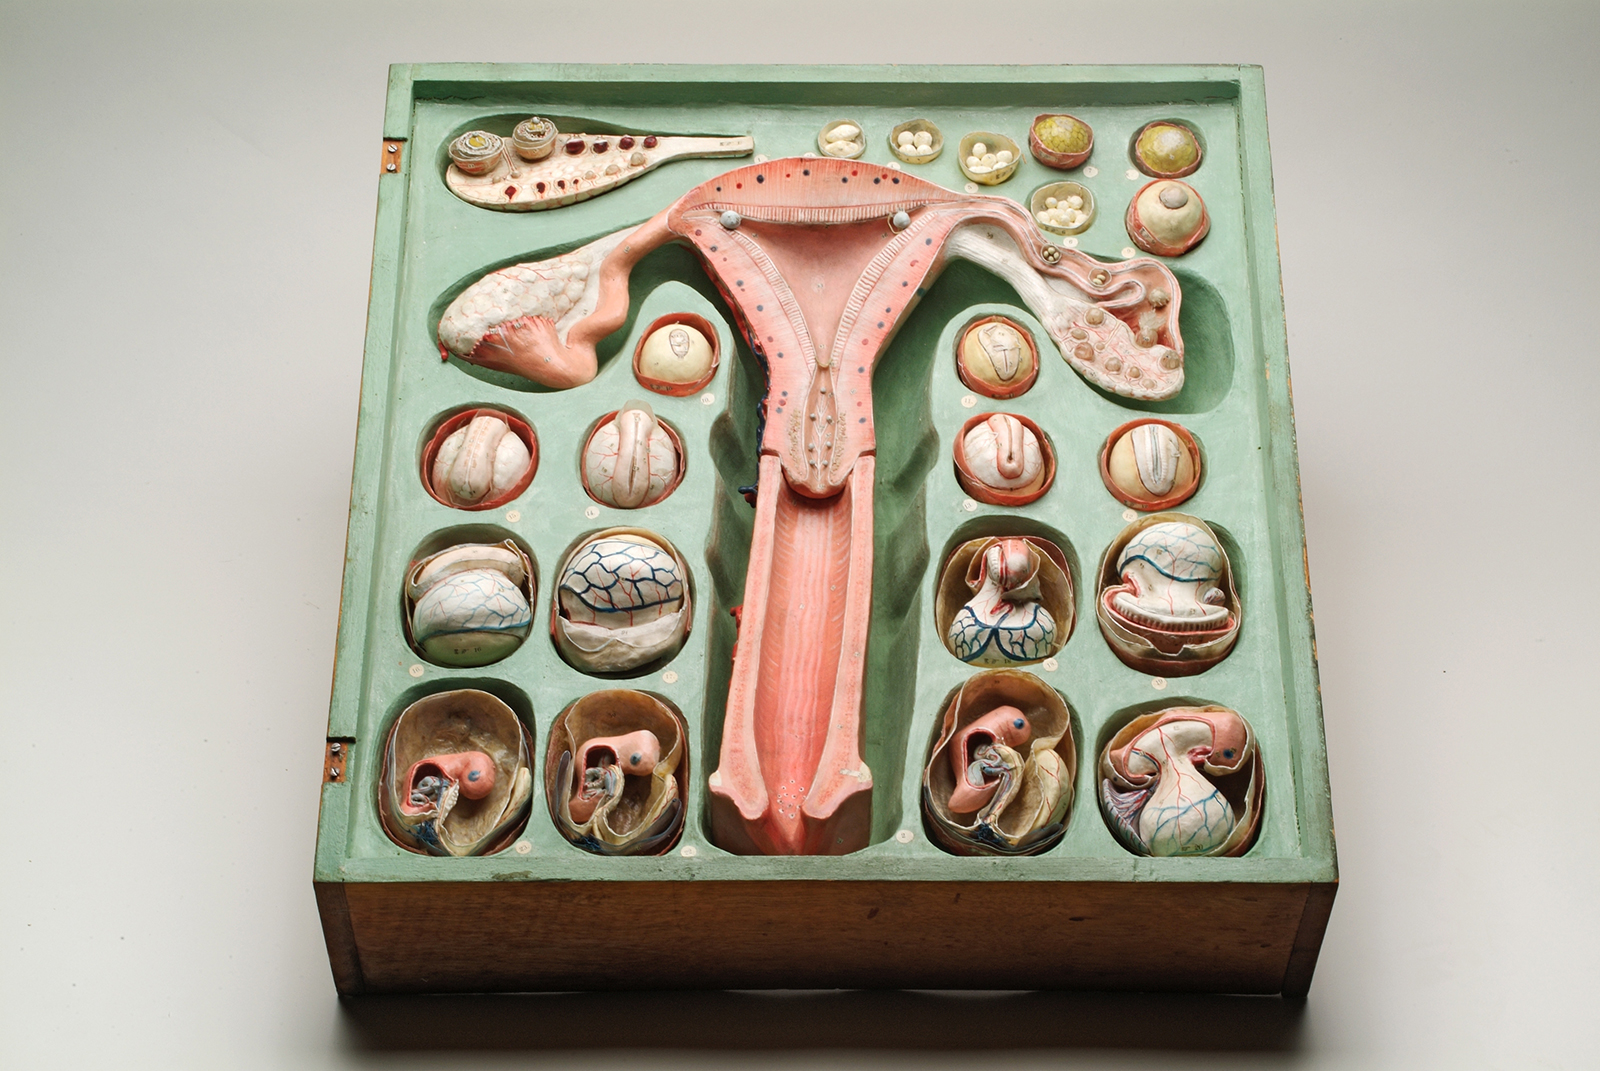 Papier Mache gynecological model created byDr Louis Auzoux c 1880